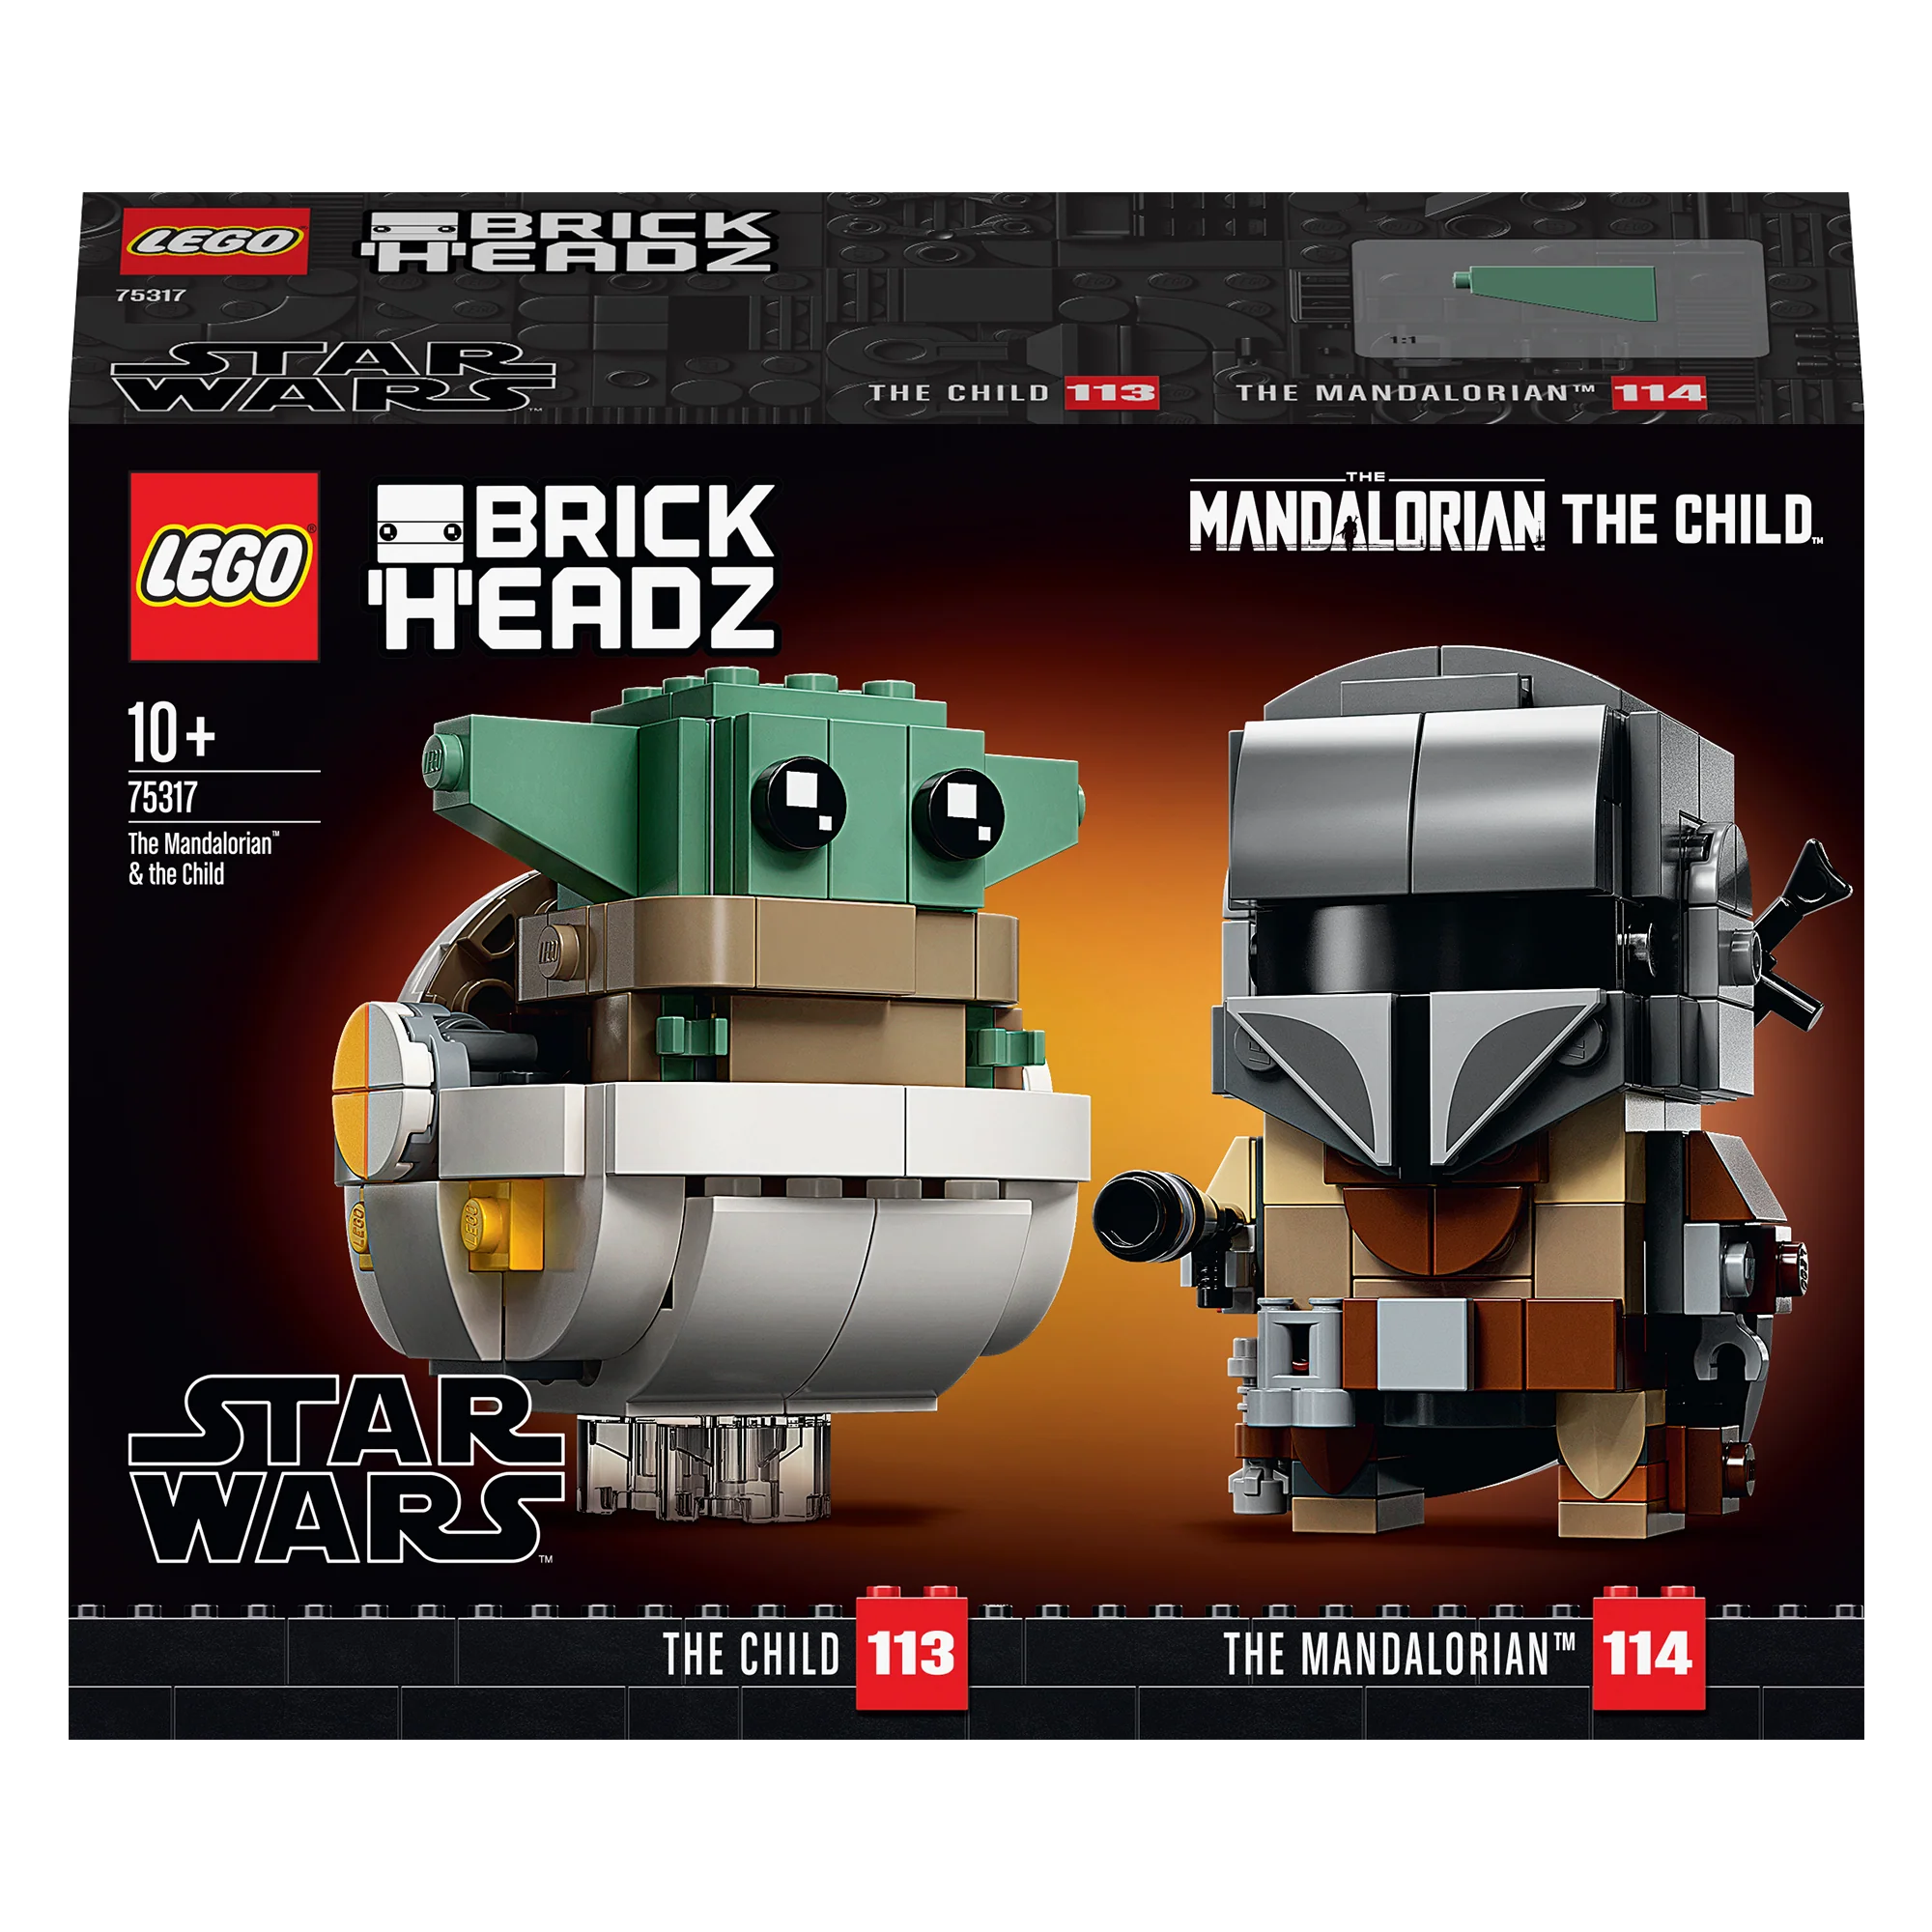 BrickHeadz and the Child Star Wars – Brugs Brickhouse